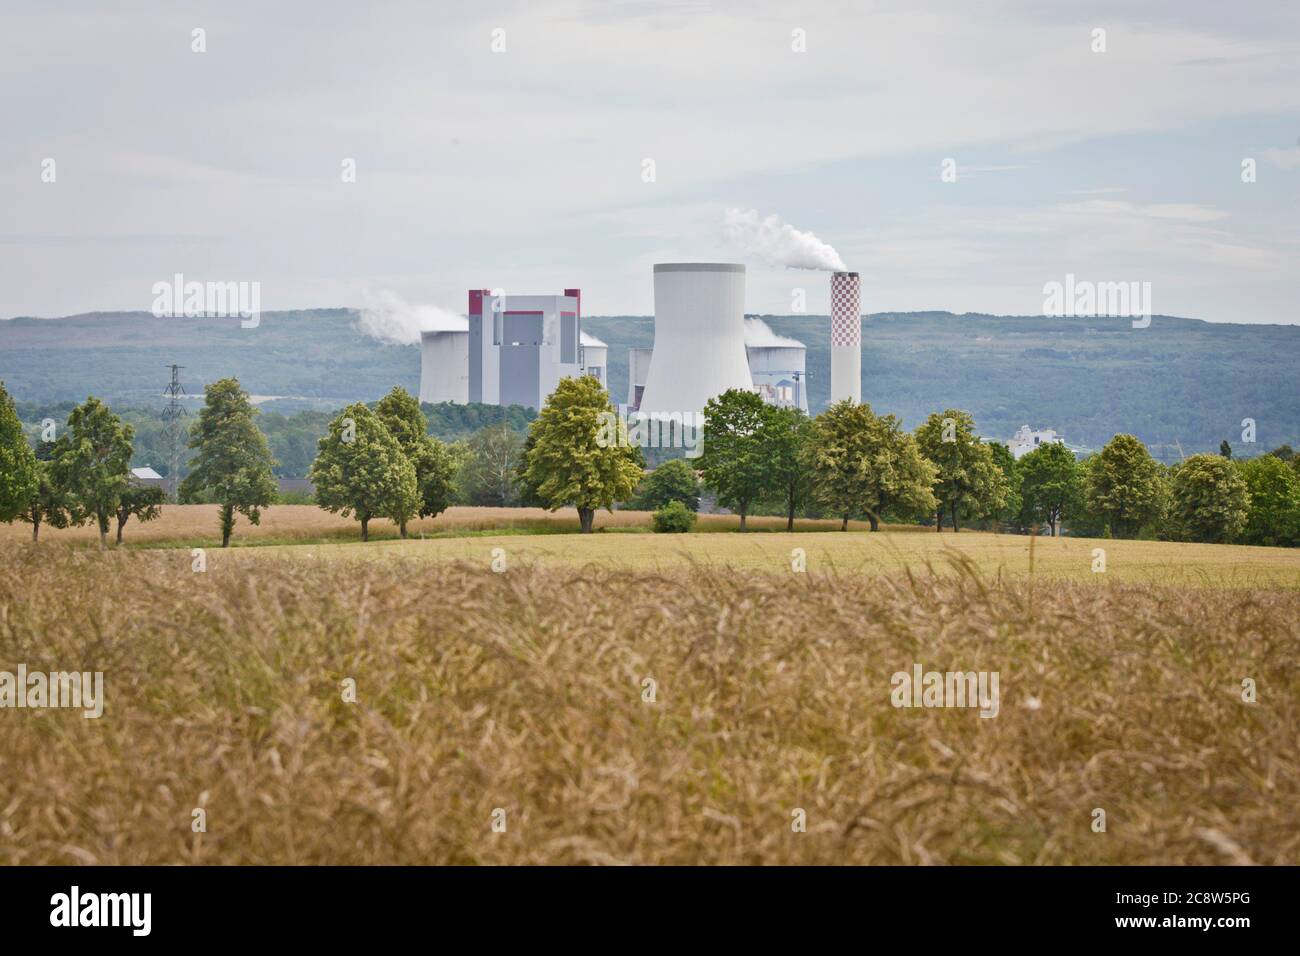 Deutschland. Juli 2020. Blick aus Deutschland auf Kühltürme aus dem polnischen Braunkohlekraftwerk Turow. Quelle: dpa/Alamy Live News Stockfoto